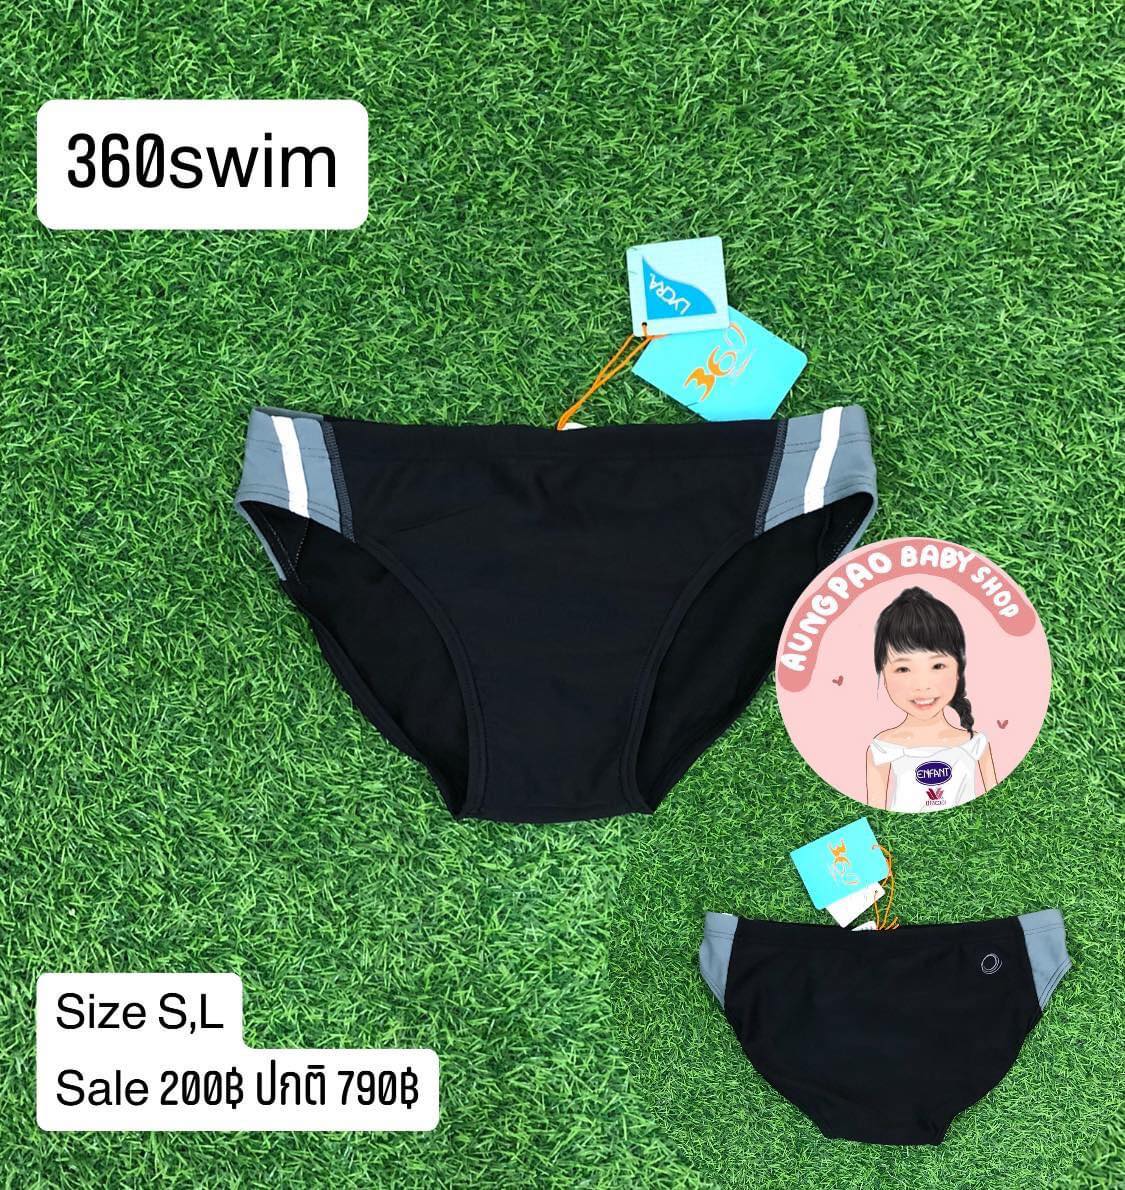 กางเกงว่ายน้ำผู้ชาย 360swim  size S , L